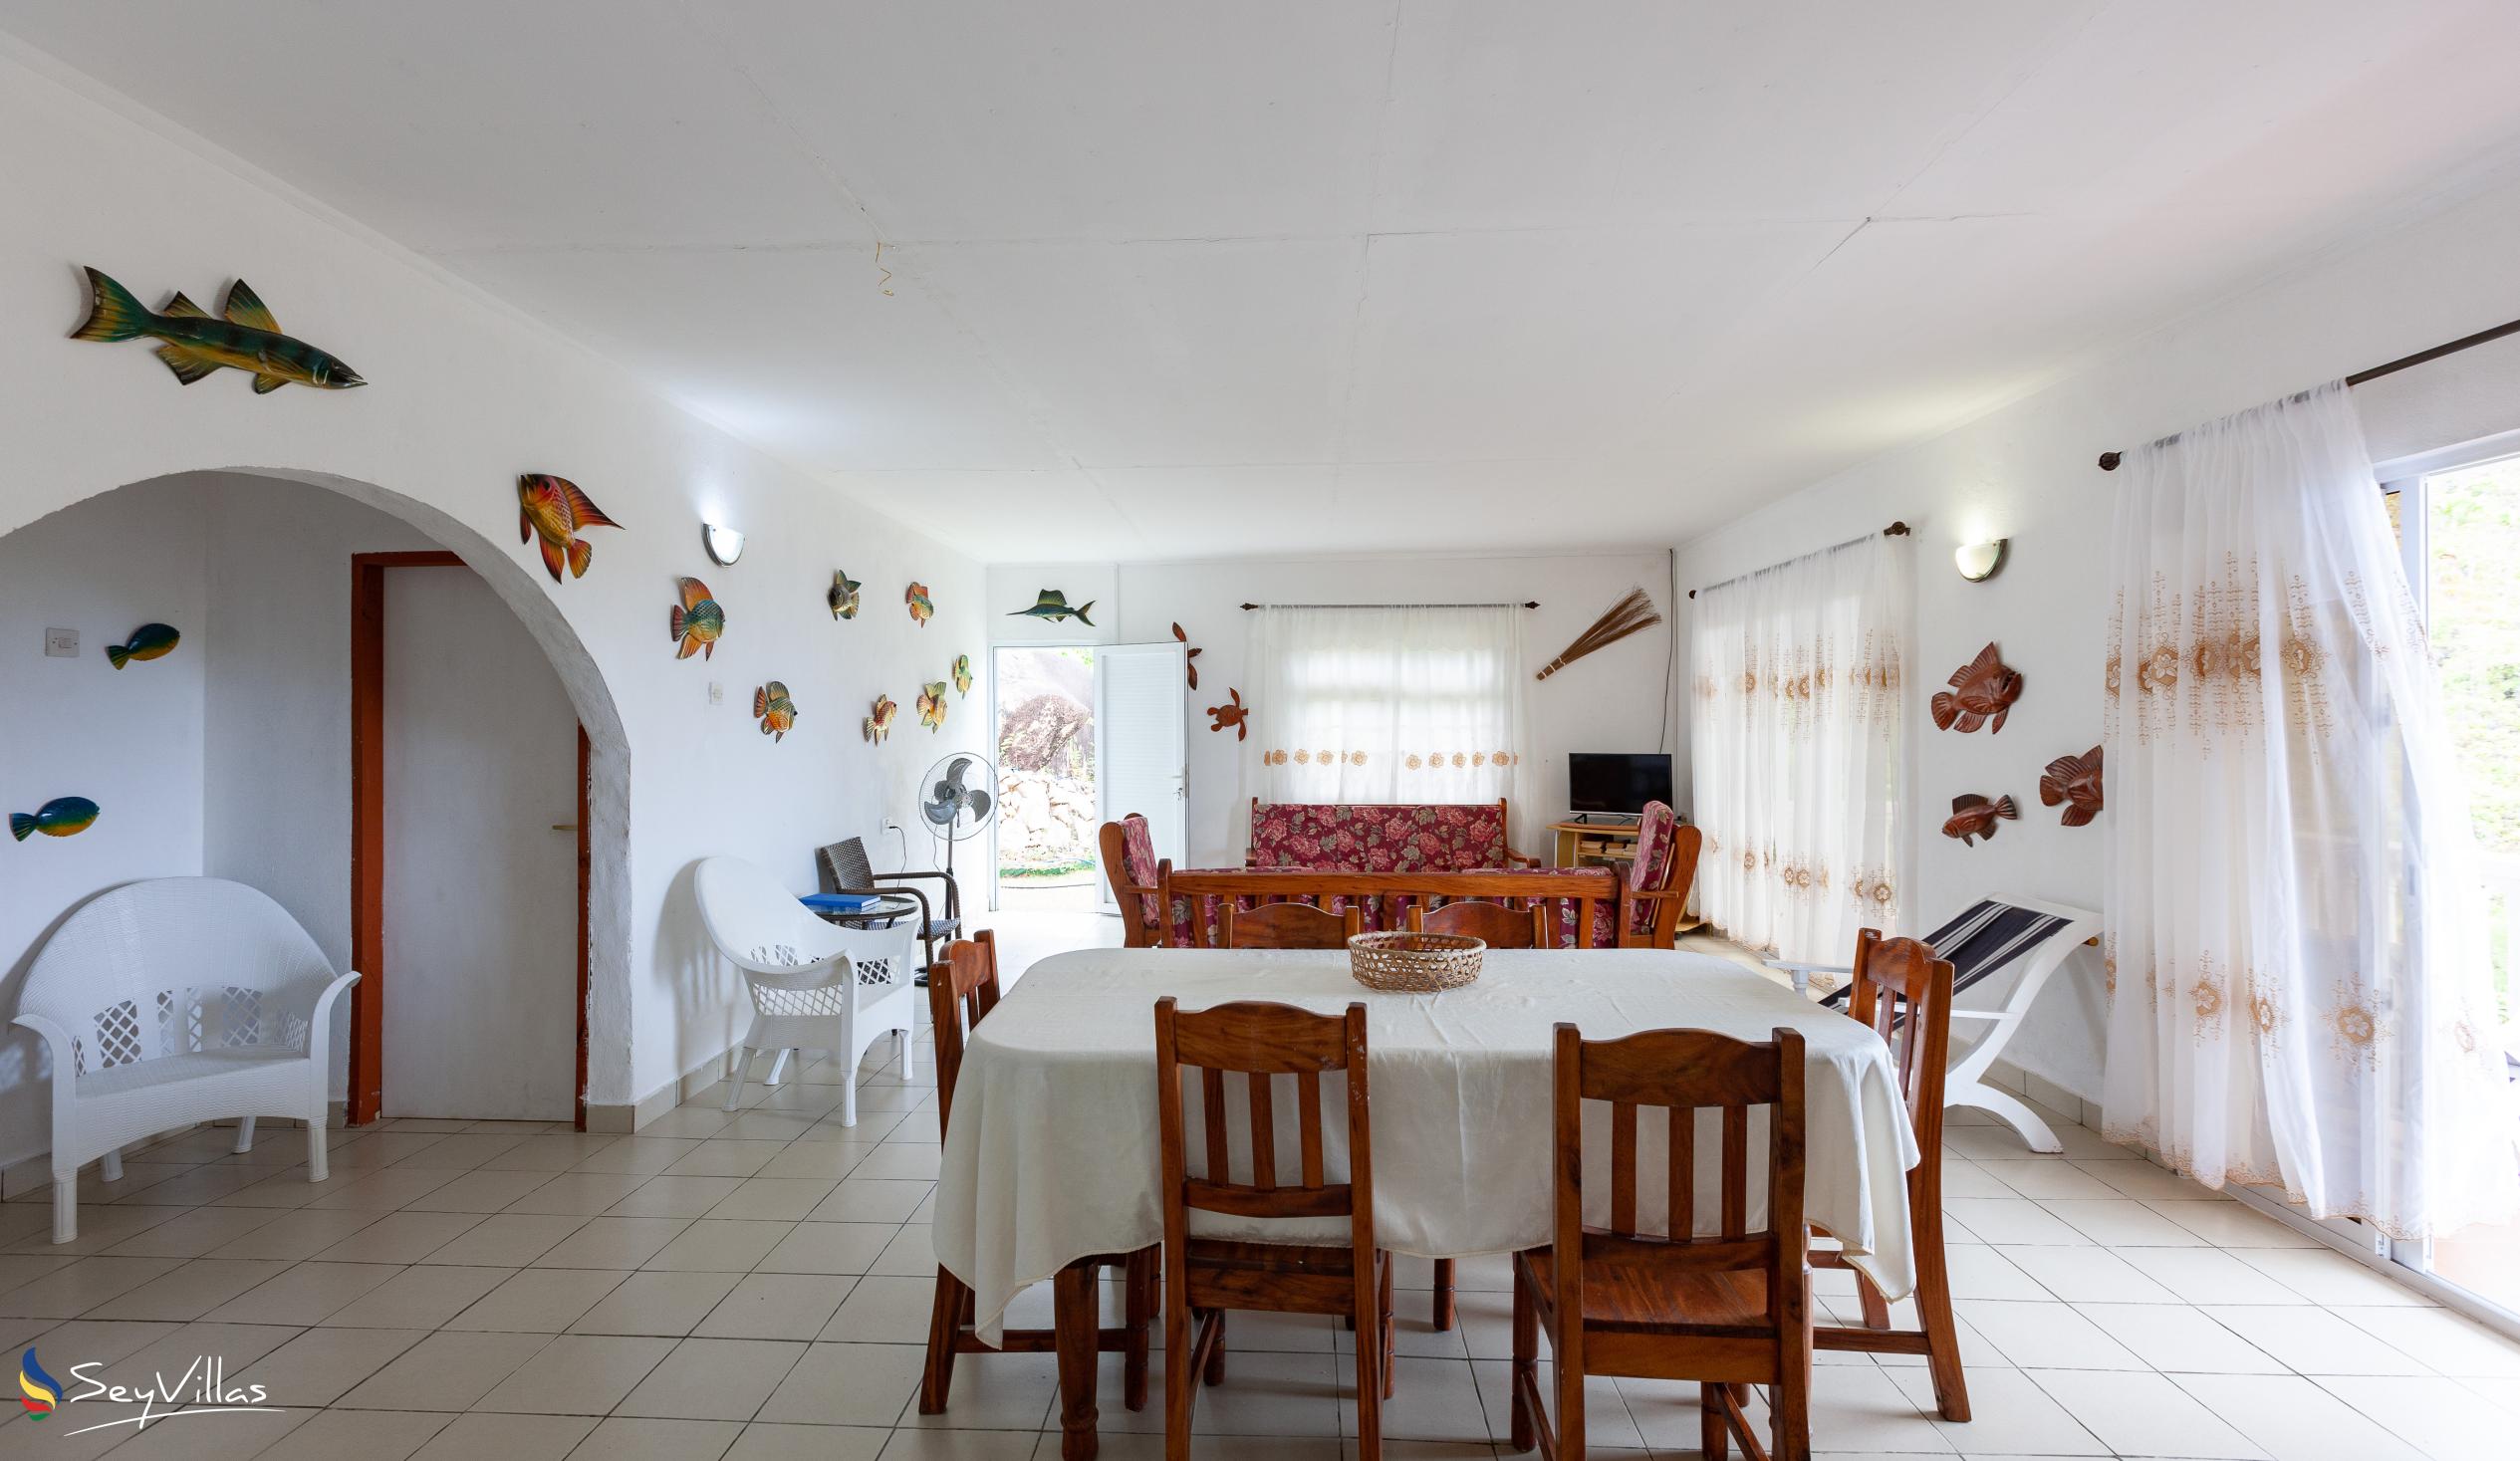 Photo 30: Maison du Soleil - Indoor area - Praslin (Seychelles)